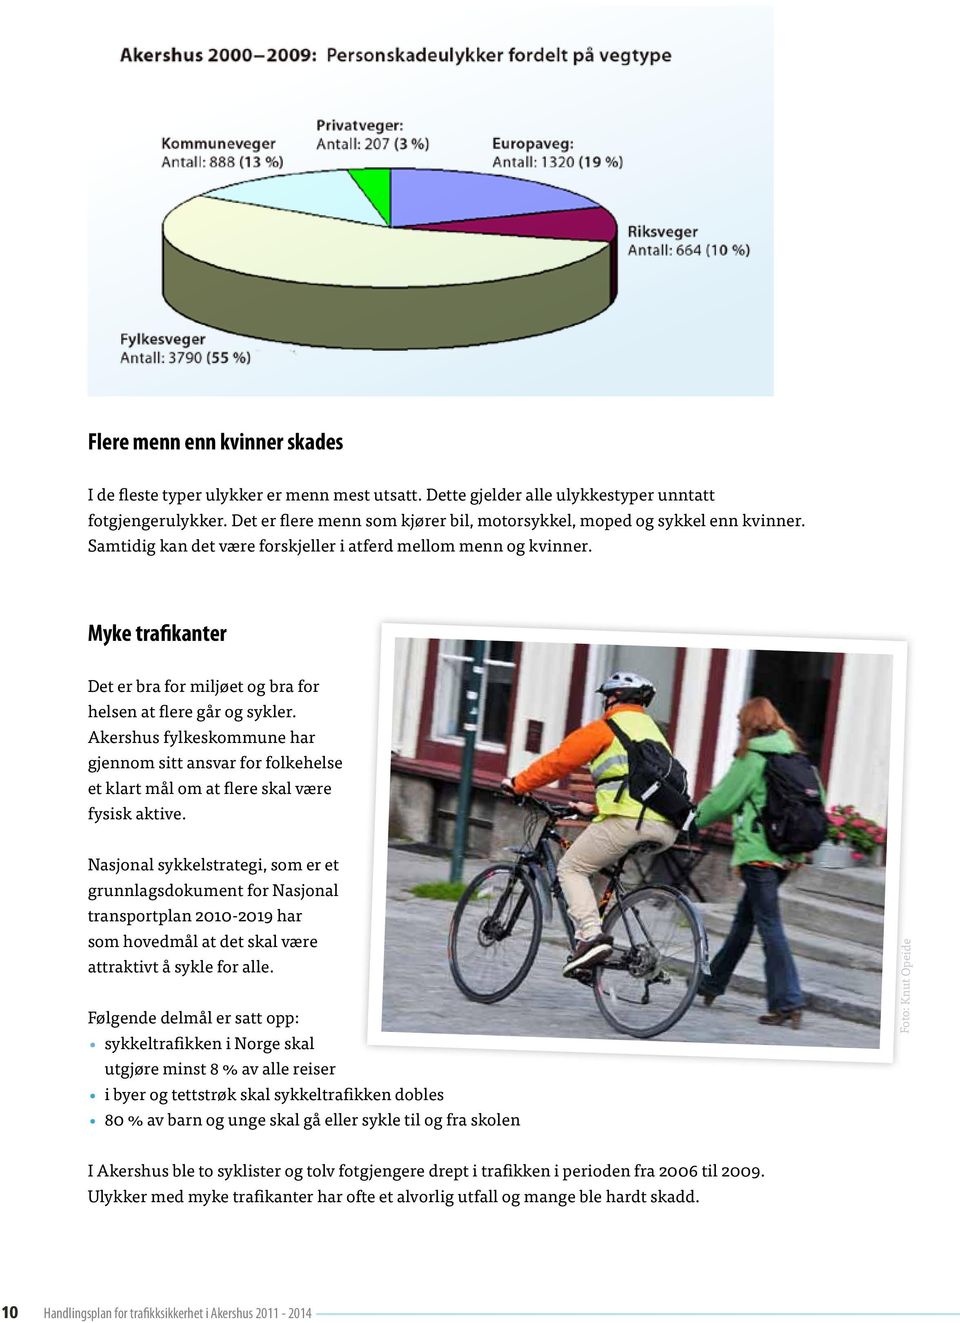 Myke trafikanter Det er bra for miljøet og bra for helsen at flere går og sykler. Akershus fylkeskommune har gjennom sitt ansvar for folkehelse et klart mål om at flere skal være fysisk aktive.